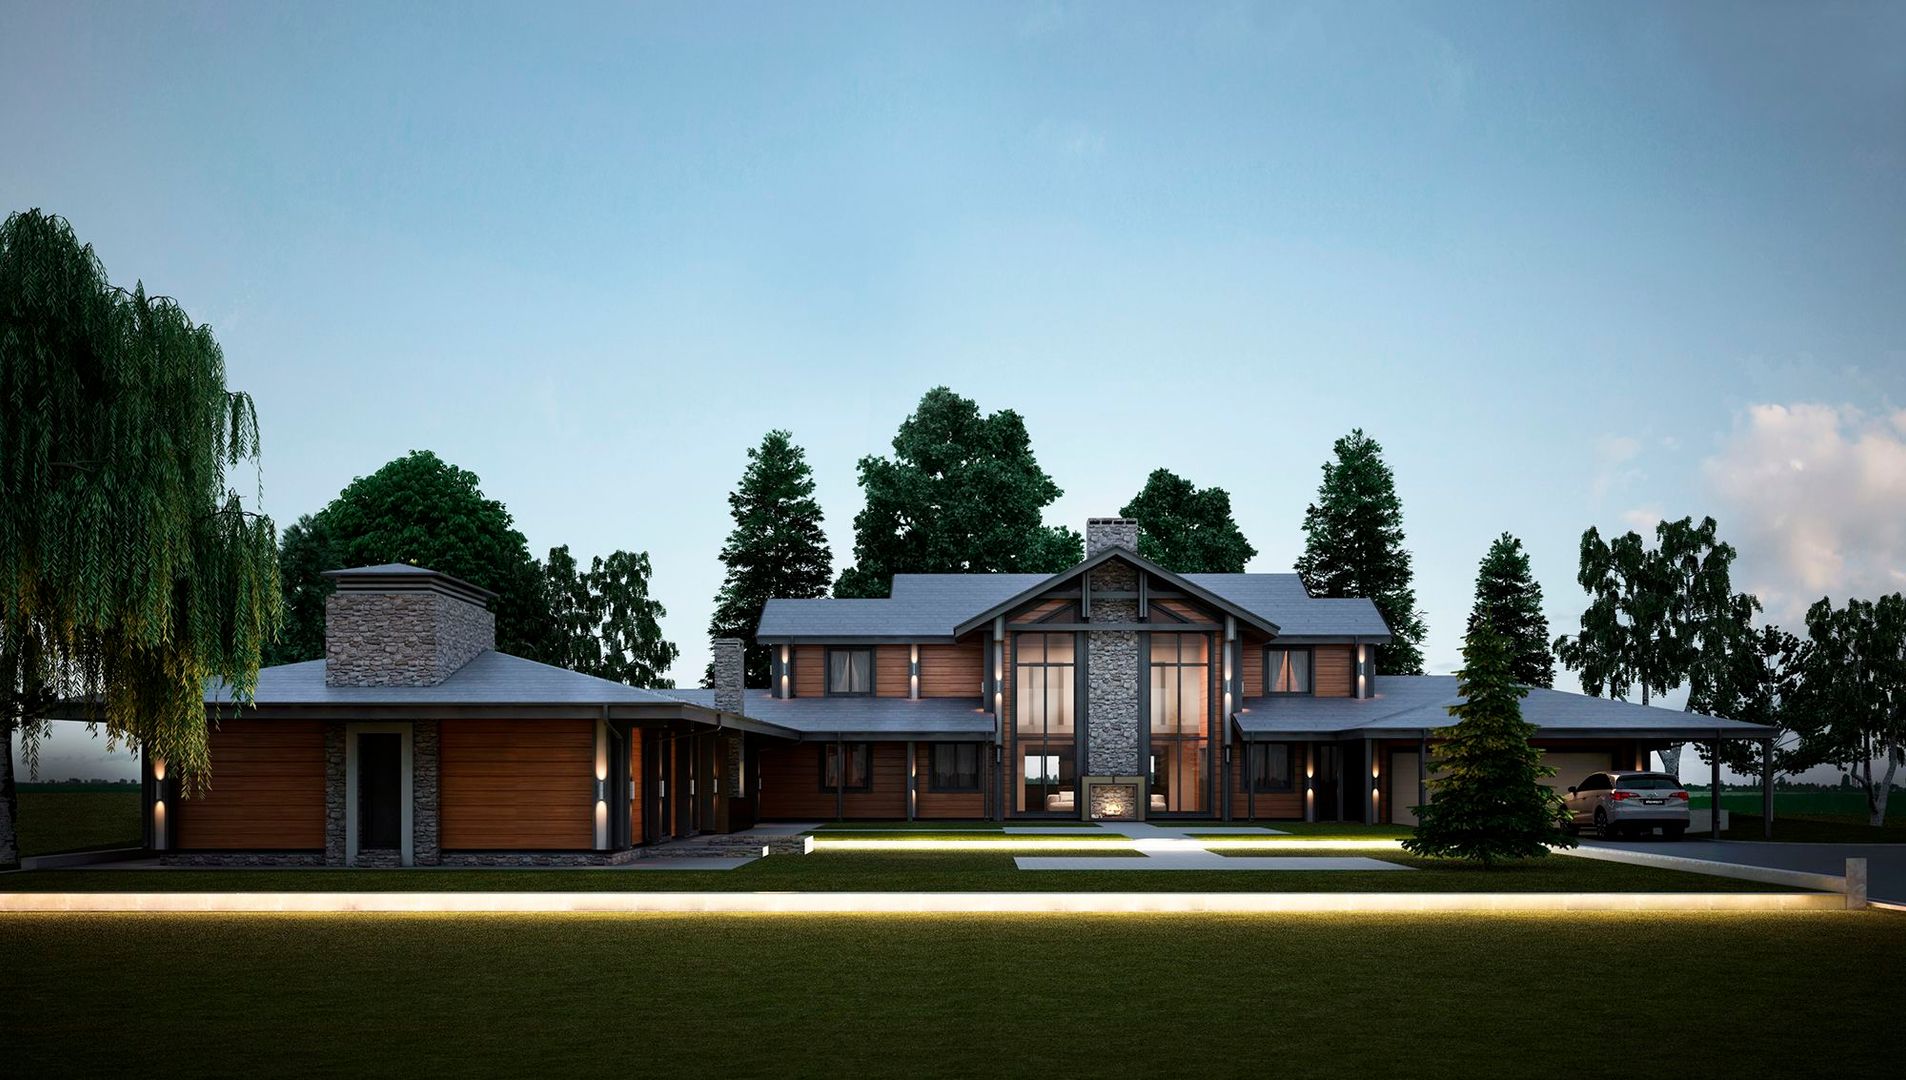 Проект загородного дома в скандинавском стиле / Scandinavian-style mansion, Way-Project Architecture & Design Way-Project Architecture & Design Casas escandinavas